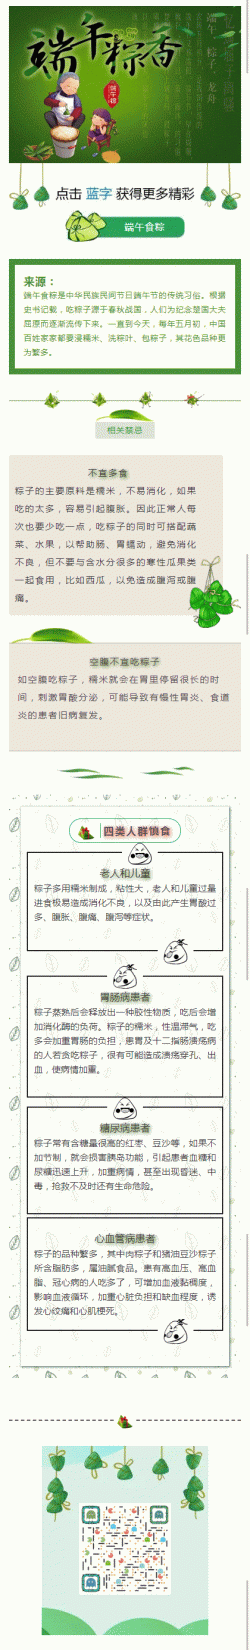 端午食粽中华民族民间节日端午节的传统习俗文章模板微信